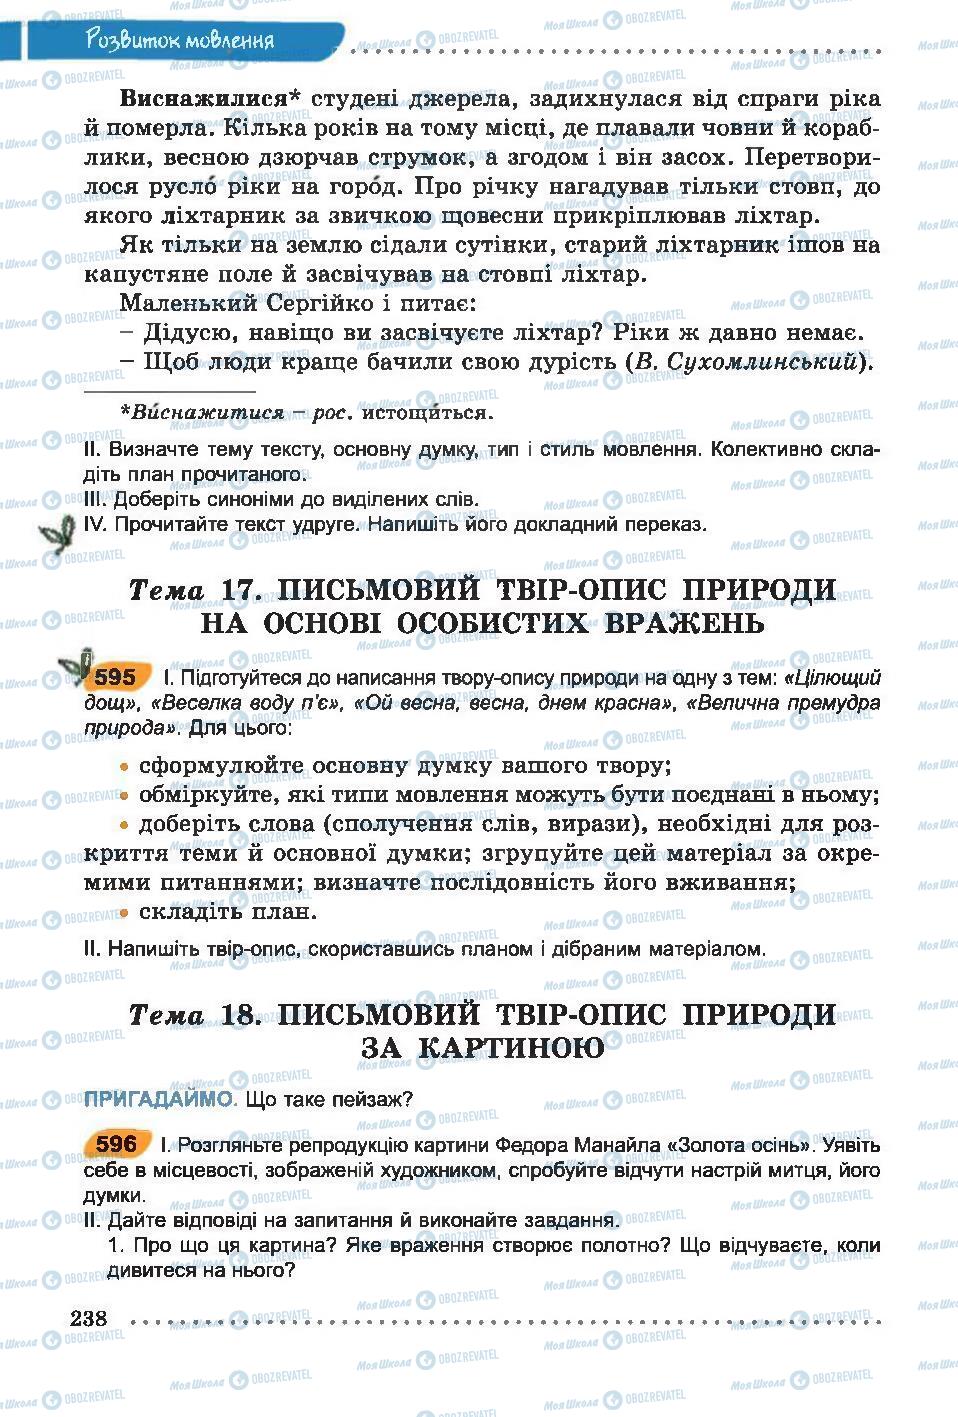 Підручники Українська мова 6 клас сторінка 238